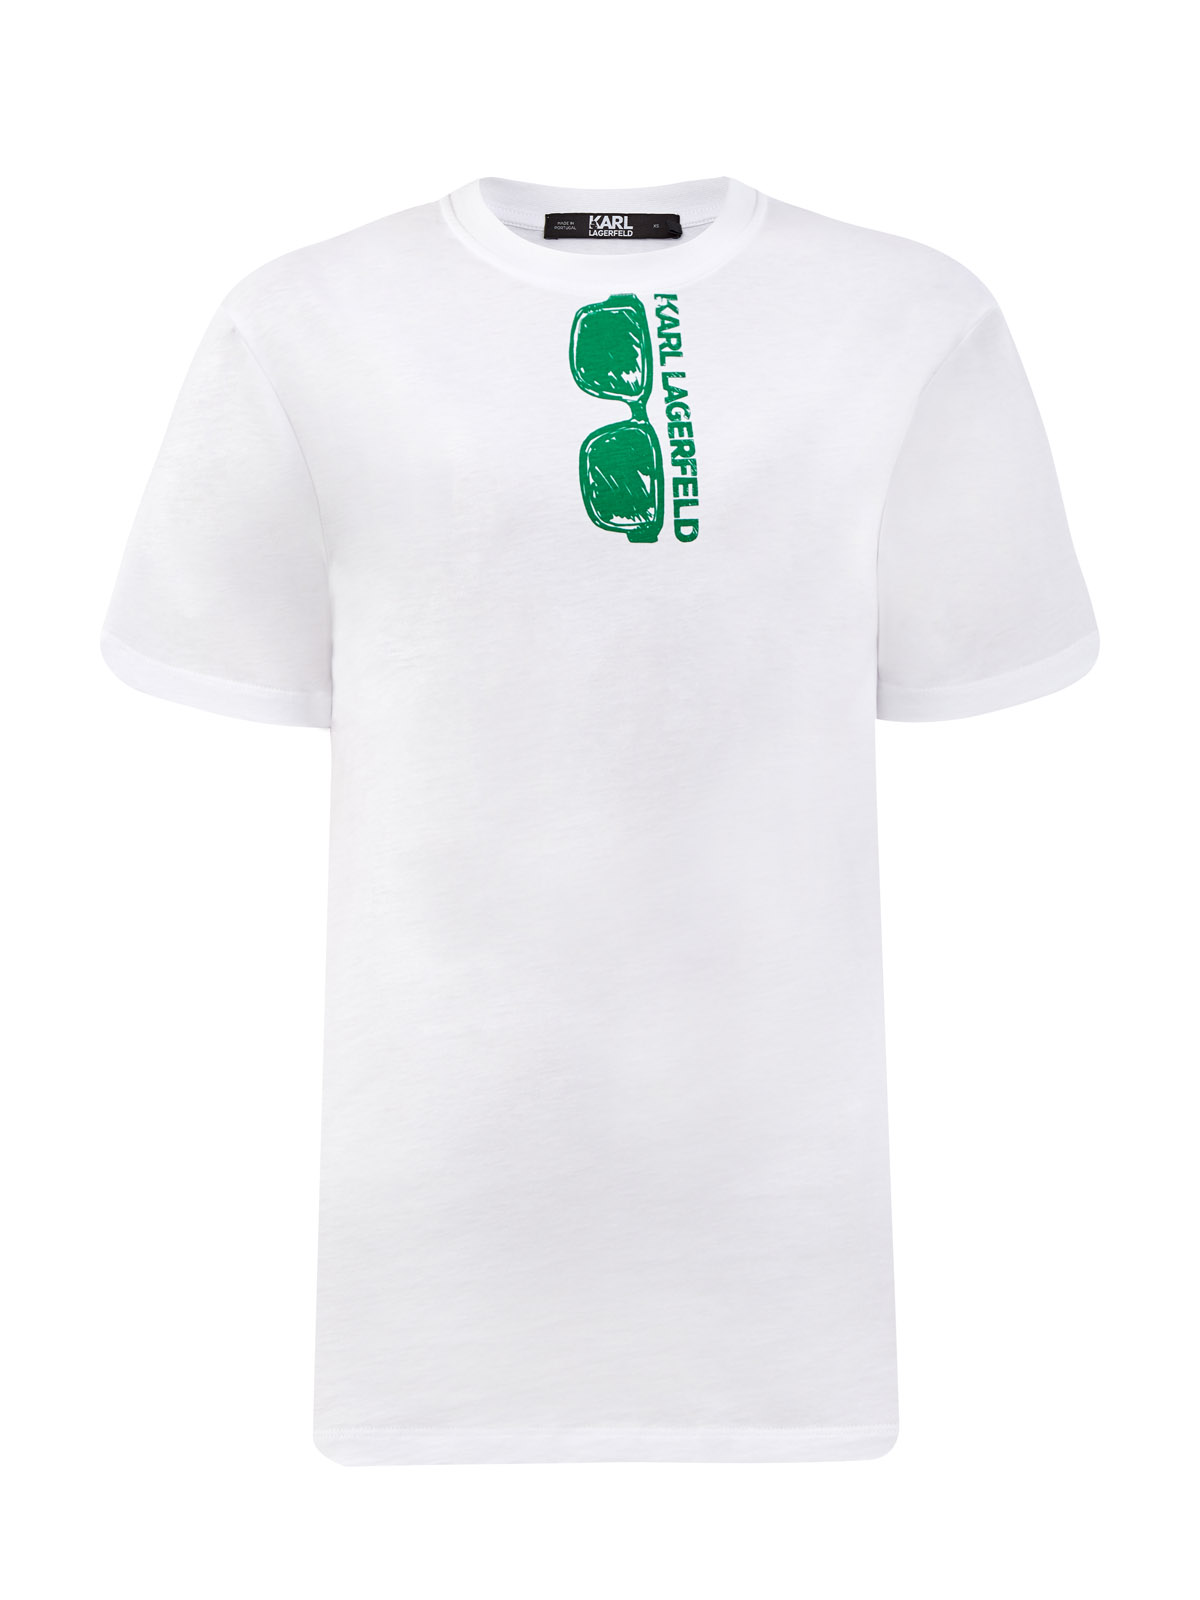 Свободная футболка из хлопка джерси с принтом KARL LAGERFELD, цвет белый, размер XS;S;M;L;XL